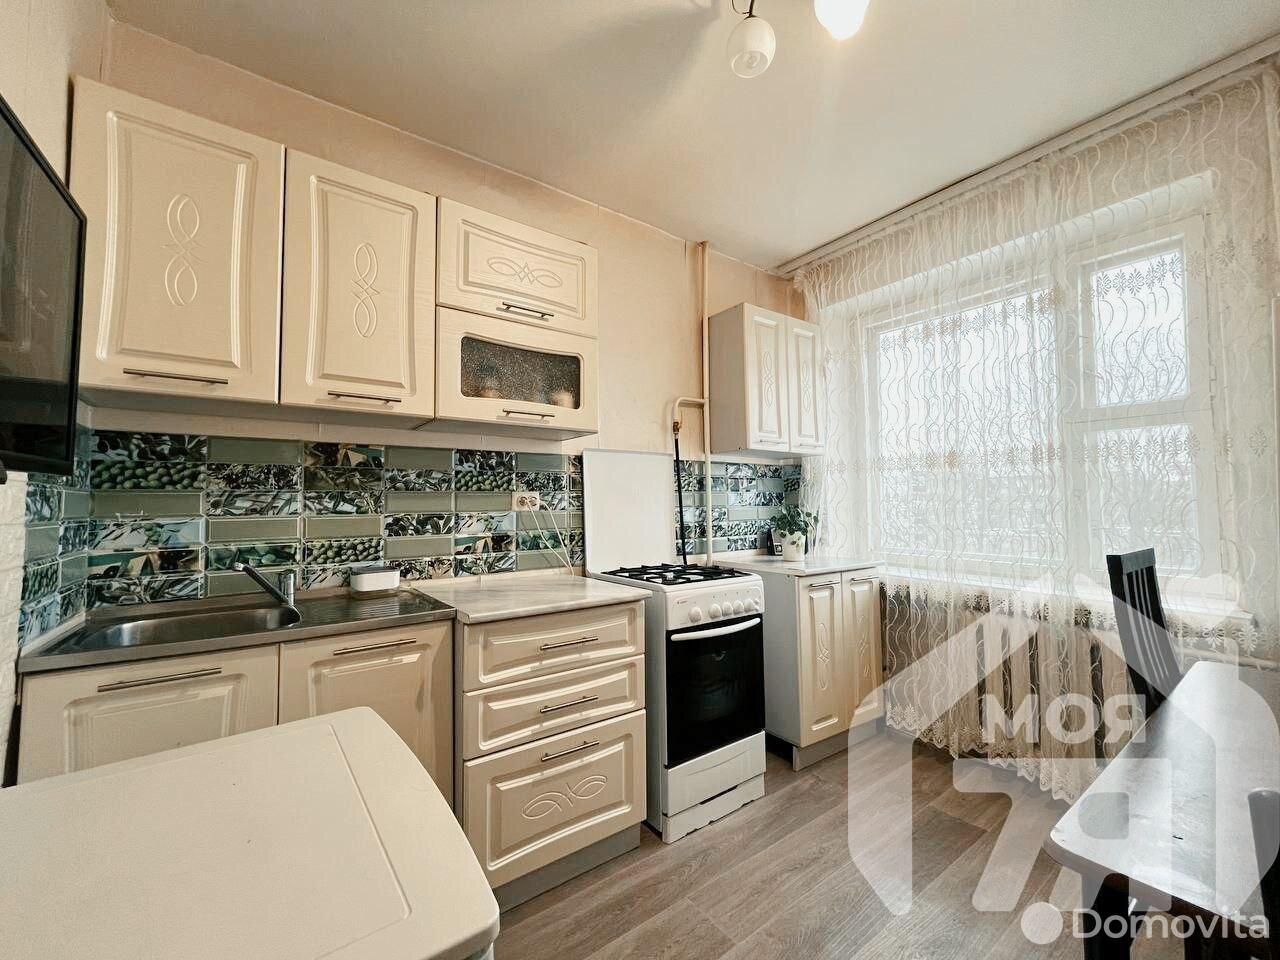 Цена продажи квартиры, Борисов, ул. Мелиоративная, д. 9